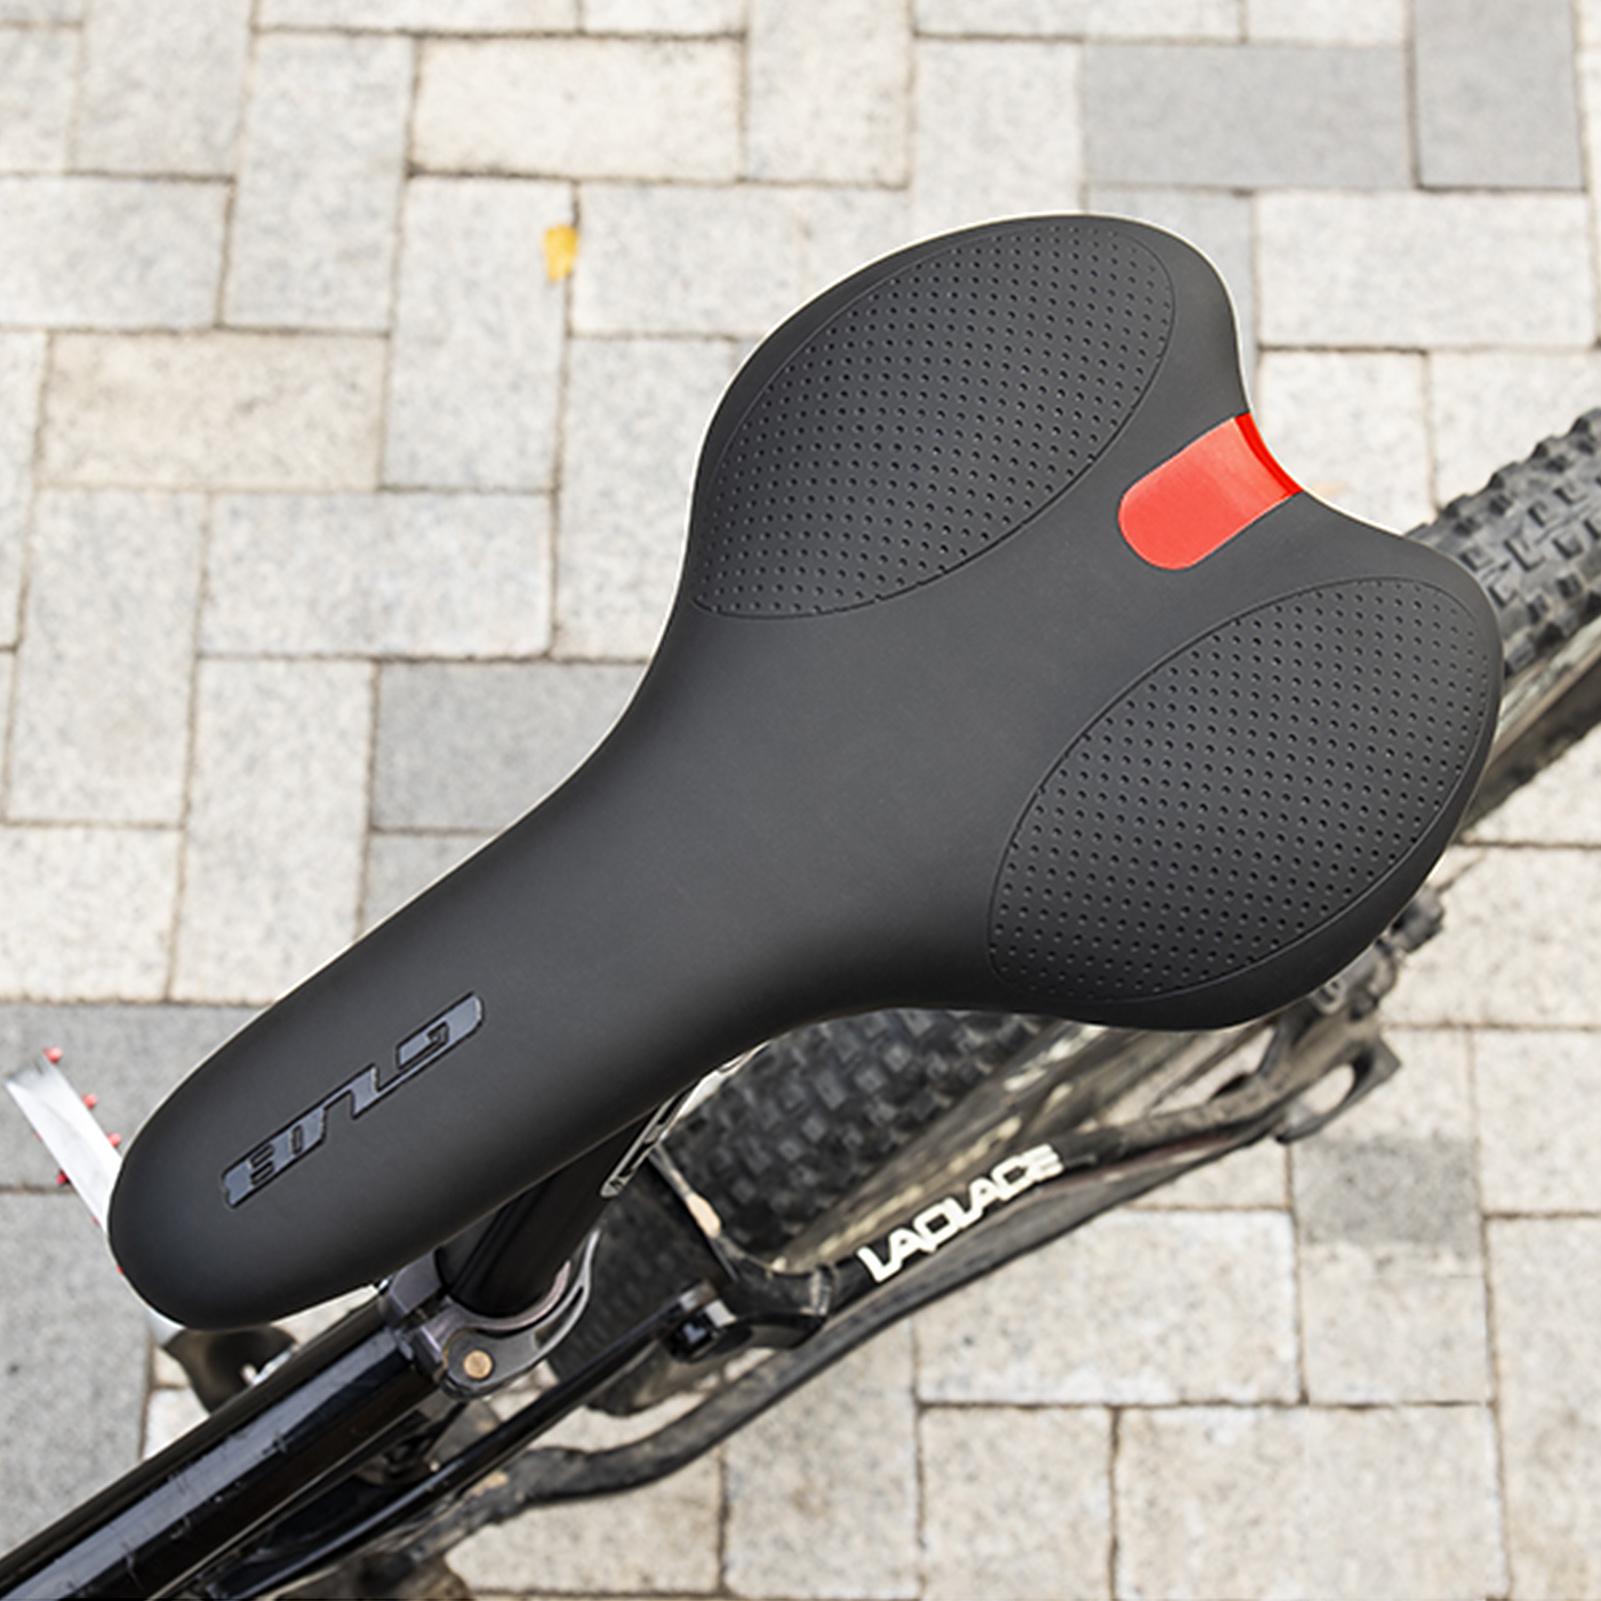 Đệm MTB gắn yên xe đạp, giúp người ngồi thoải mái, êm ái, dễ dàng thay thế và lắp đặt